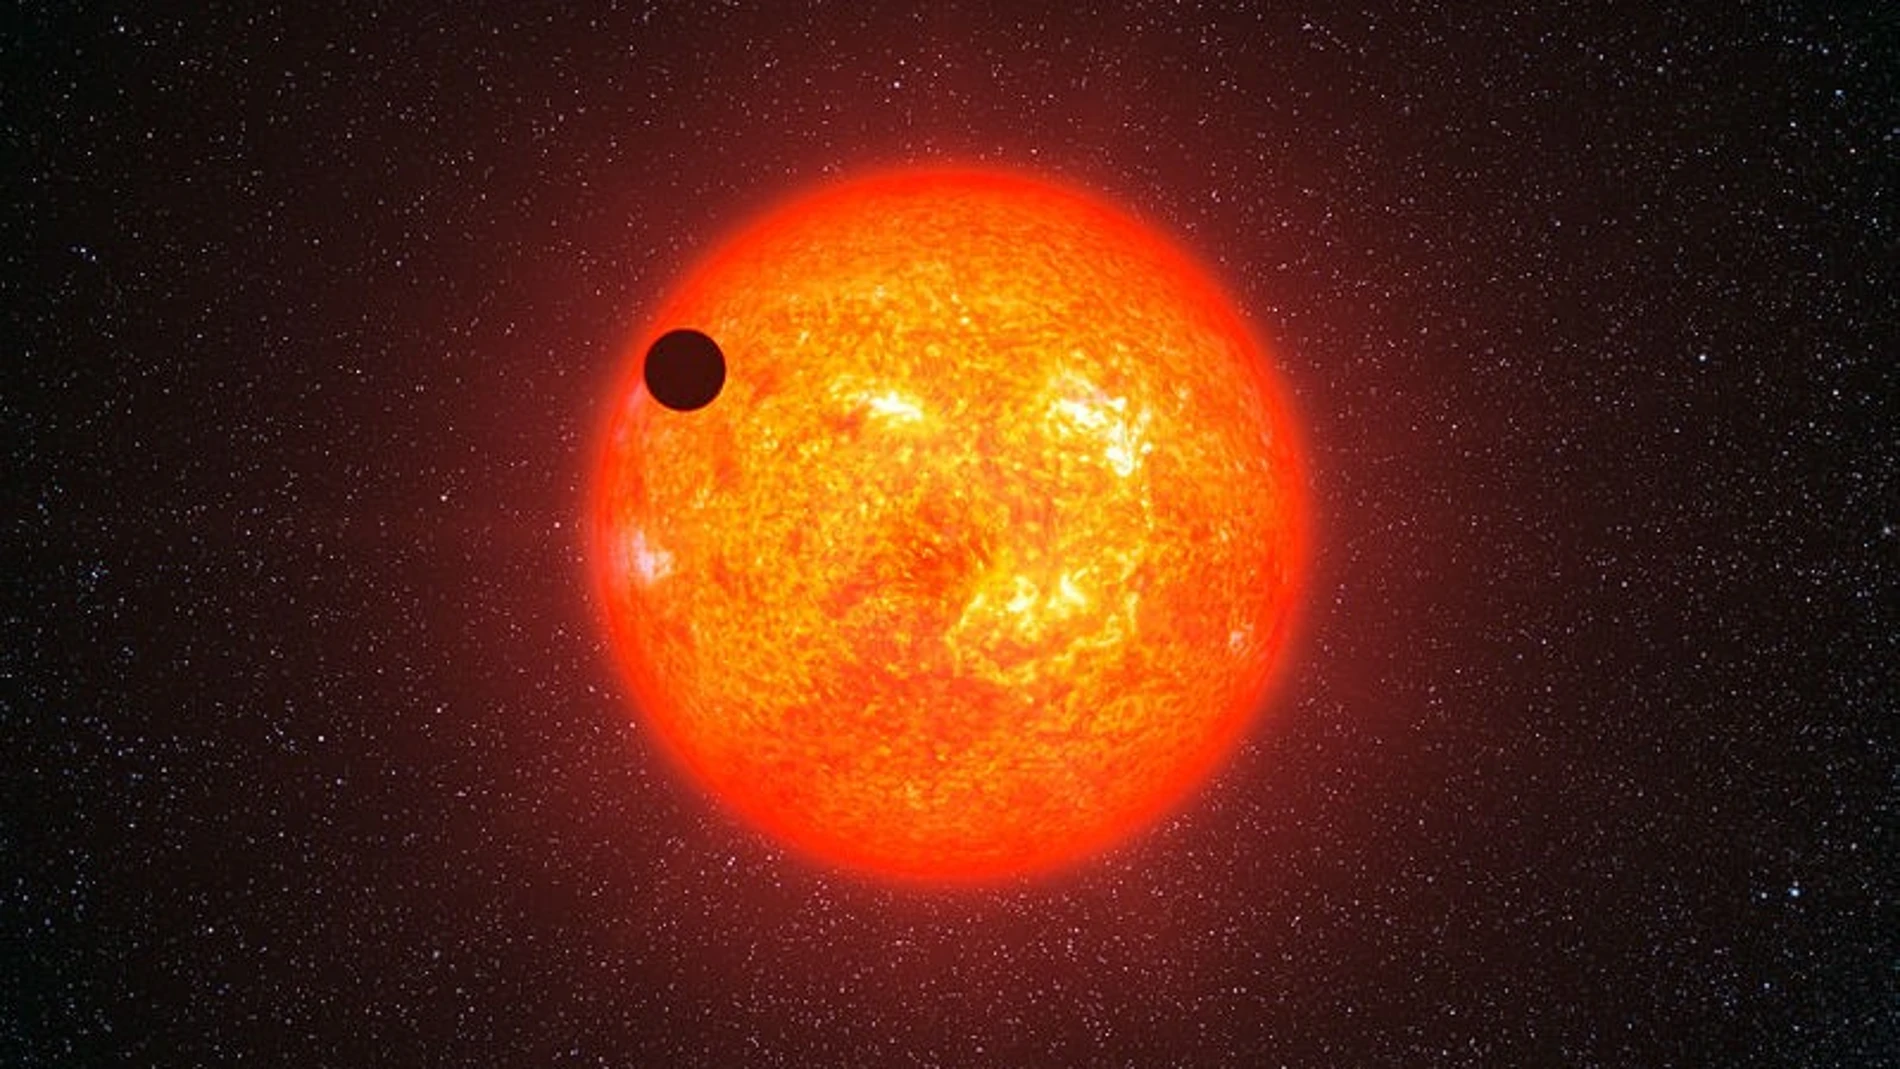 Representación artística del exoplaneta GJ 1214b pasando frente a su estrella roja. Este está a 40 años luz de nosotros y no está relacionado con el presente artículo.